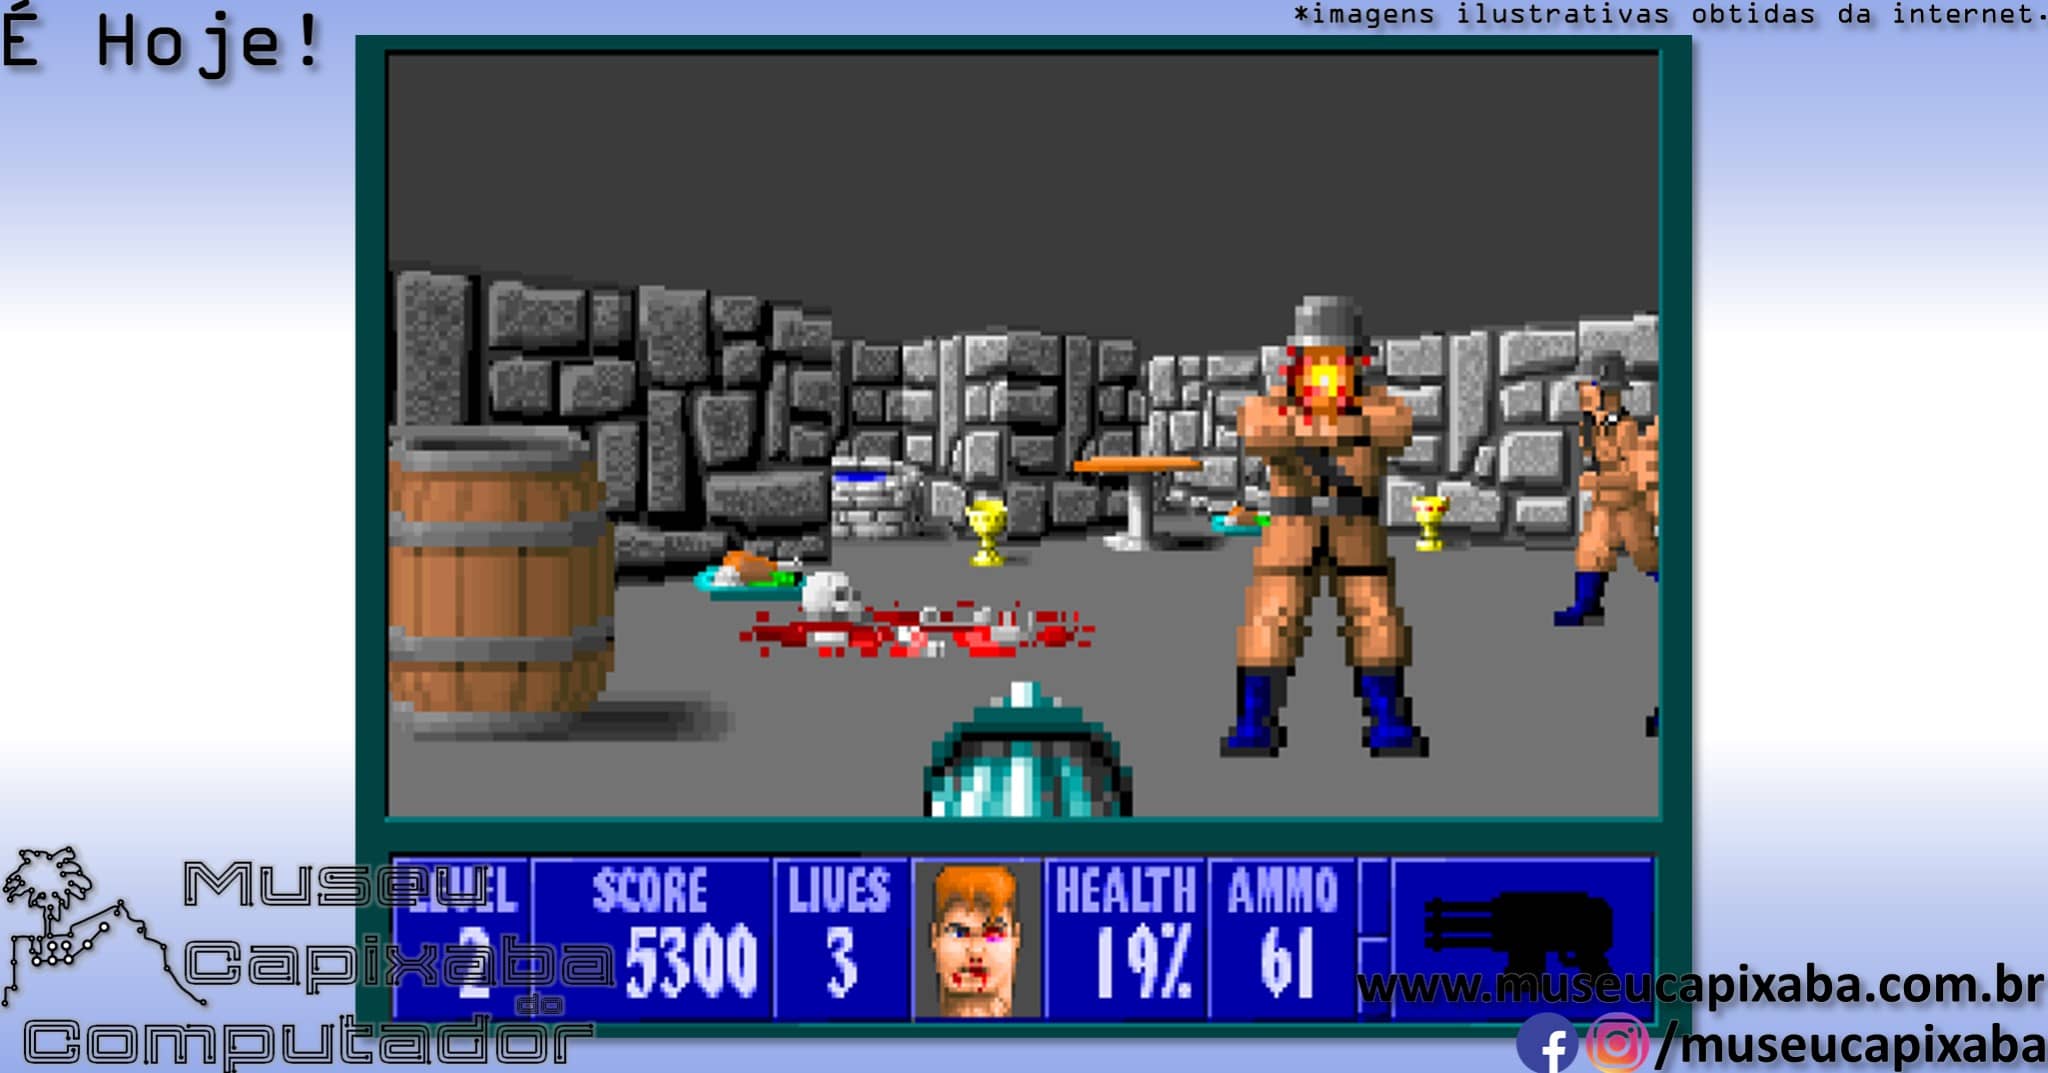 Jogo Wolfenstein 3D no Jogos 360